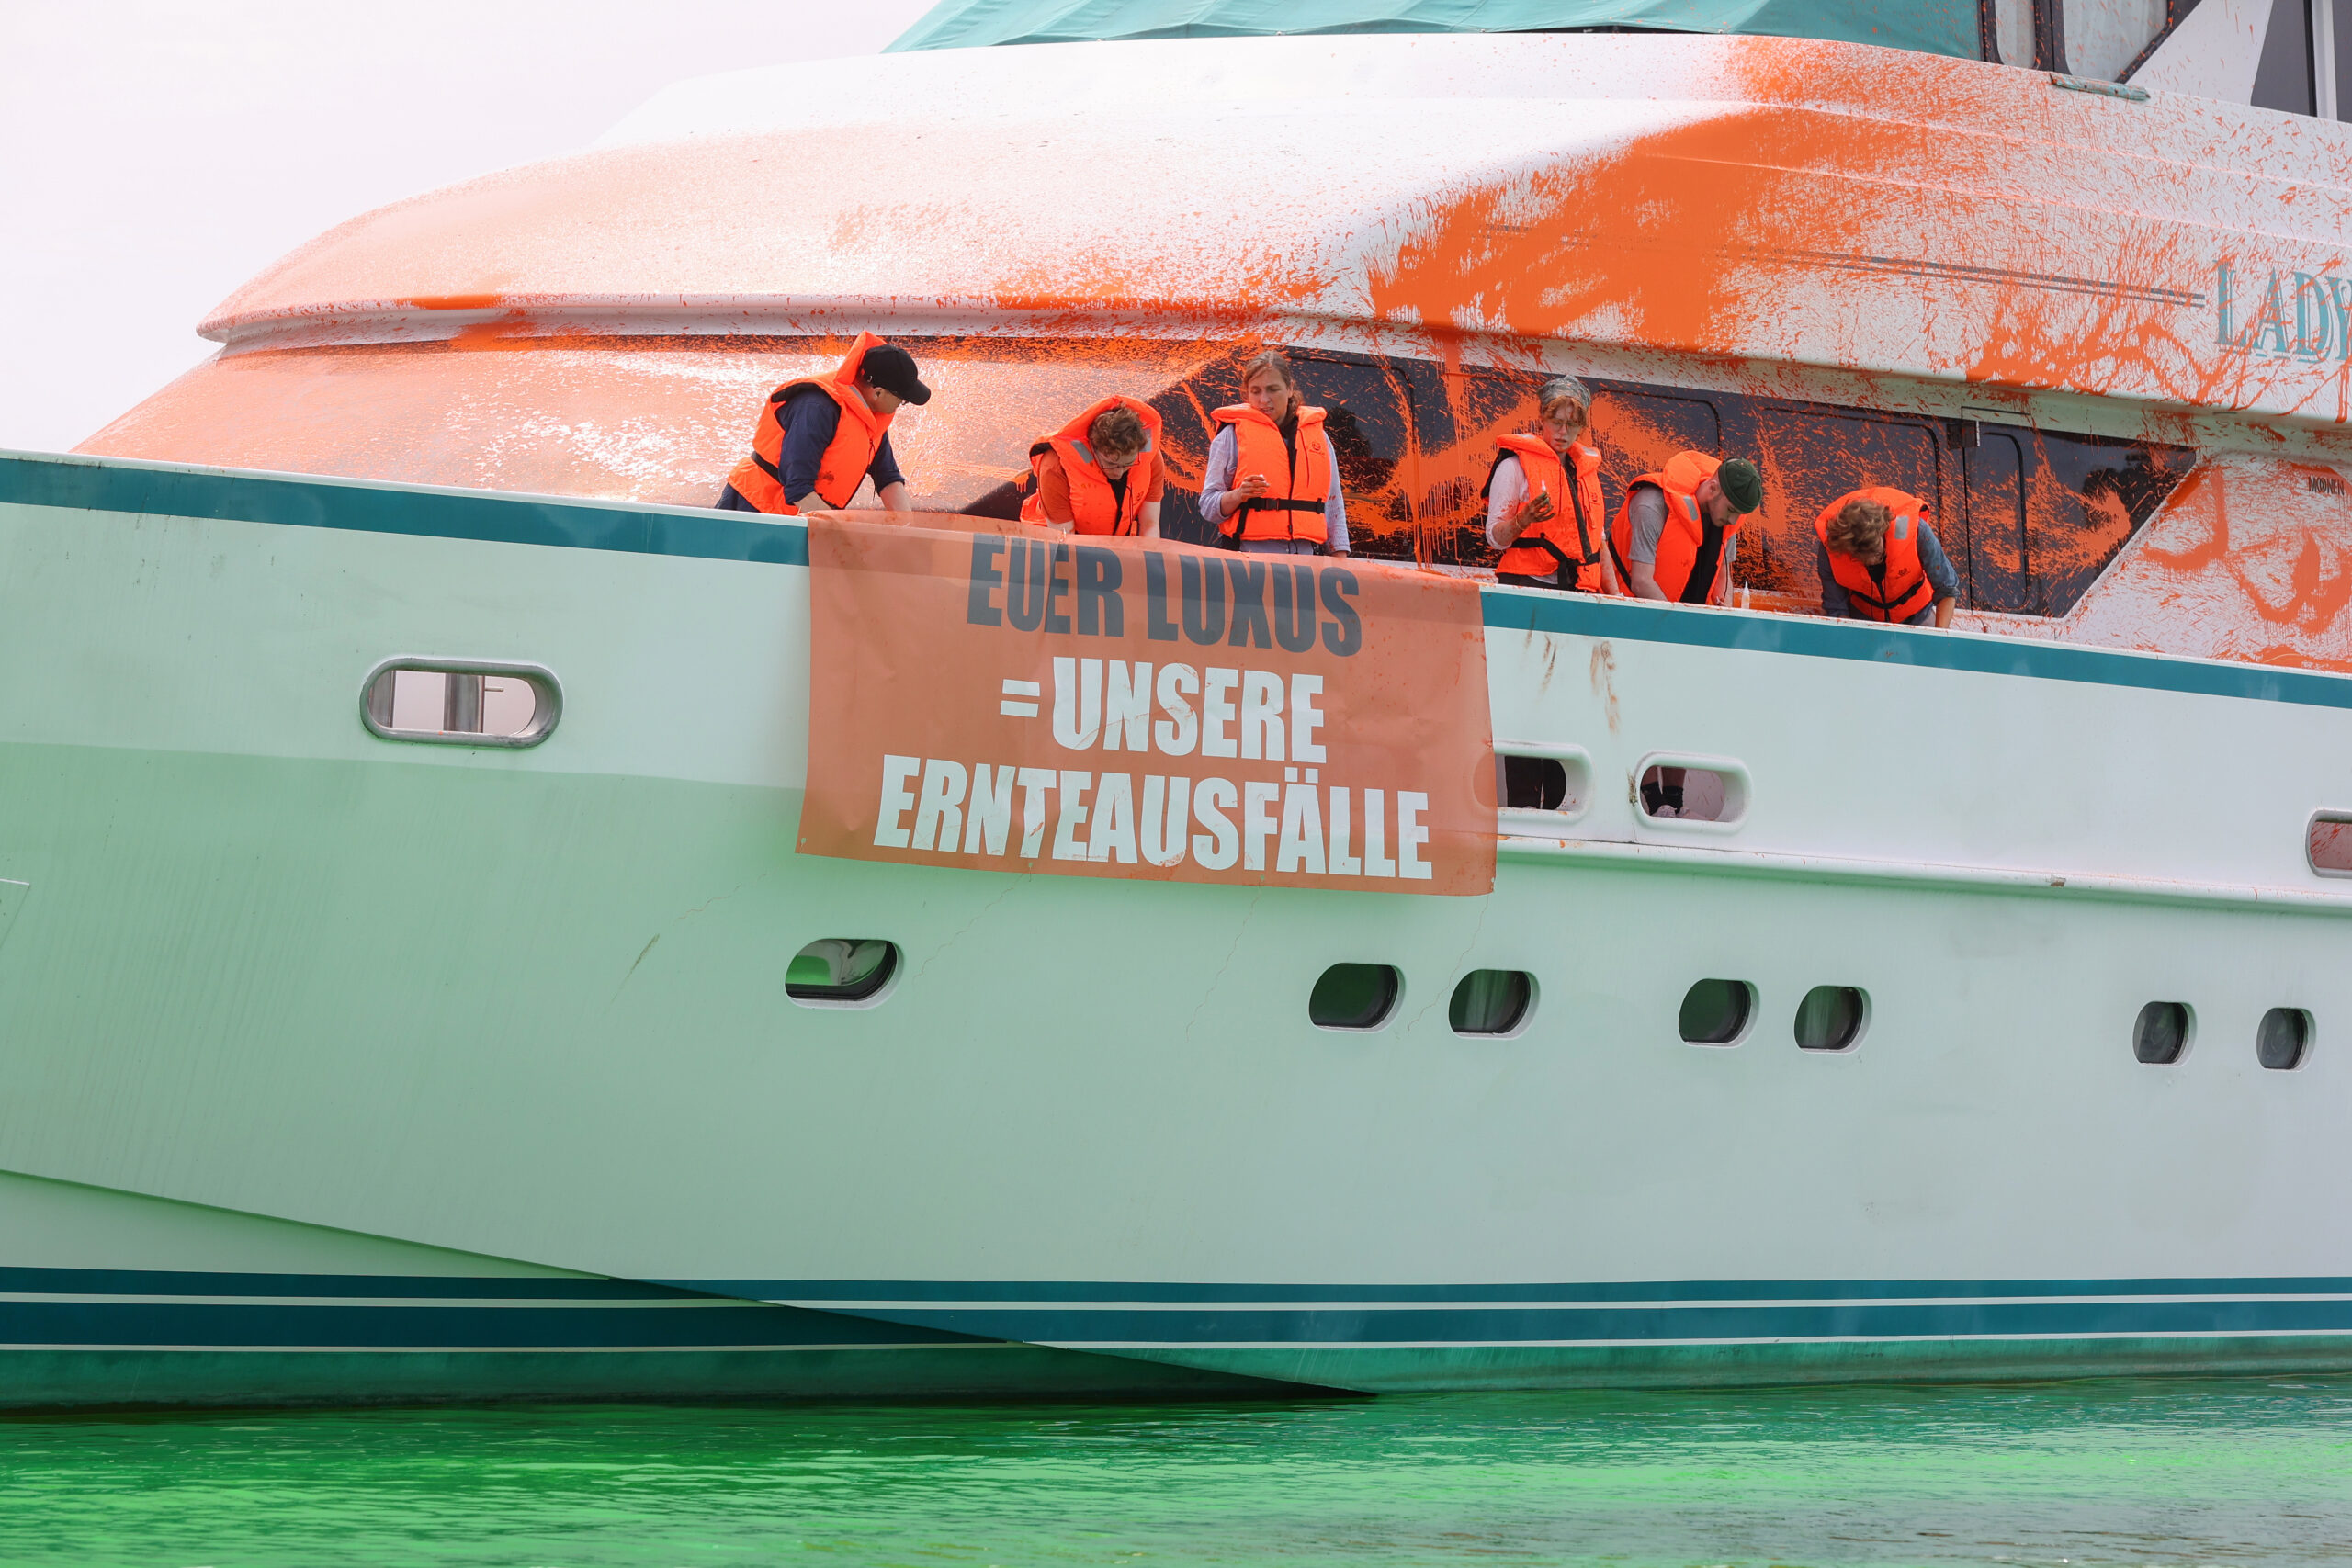 Teilnehmer:innen einer Protestaktion stehen mit Transparenten auf einer Yacht im Hafen von Neustadt. Auf einem Transparent ist die Aufschrift „Euer Luxus = Unsere Ernteausfälle“ zu sehen.